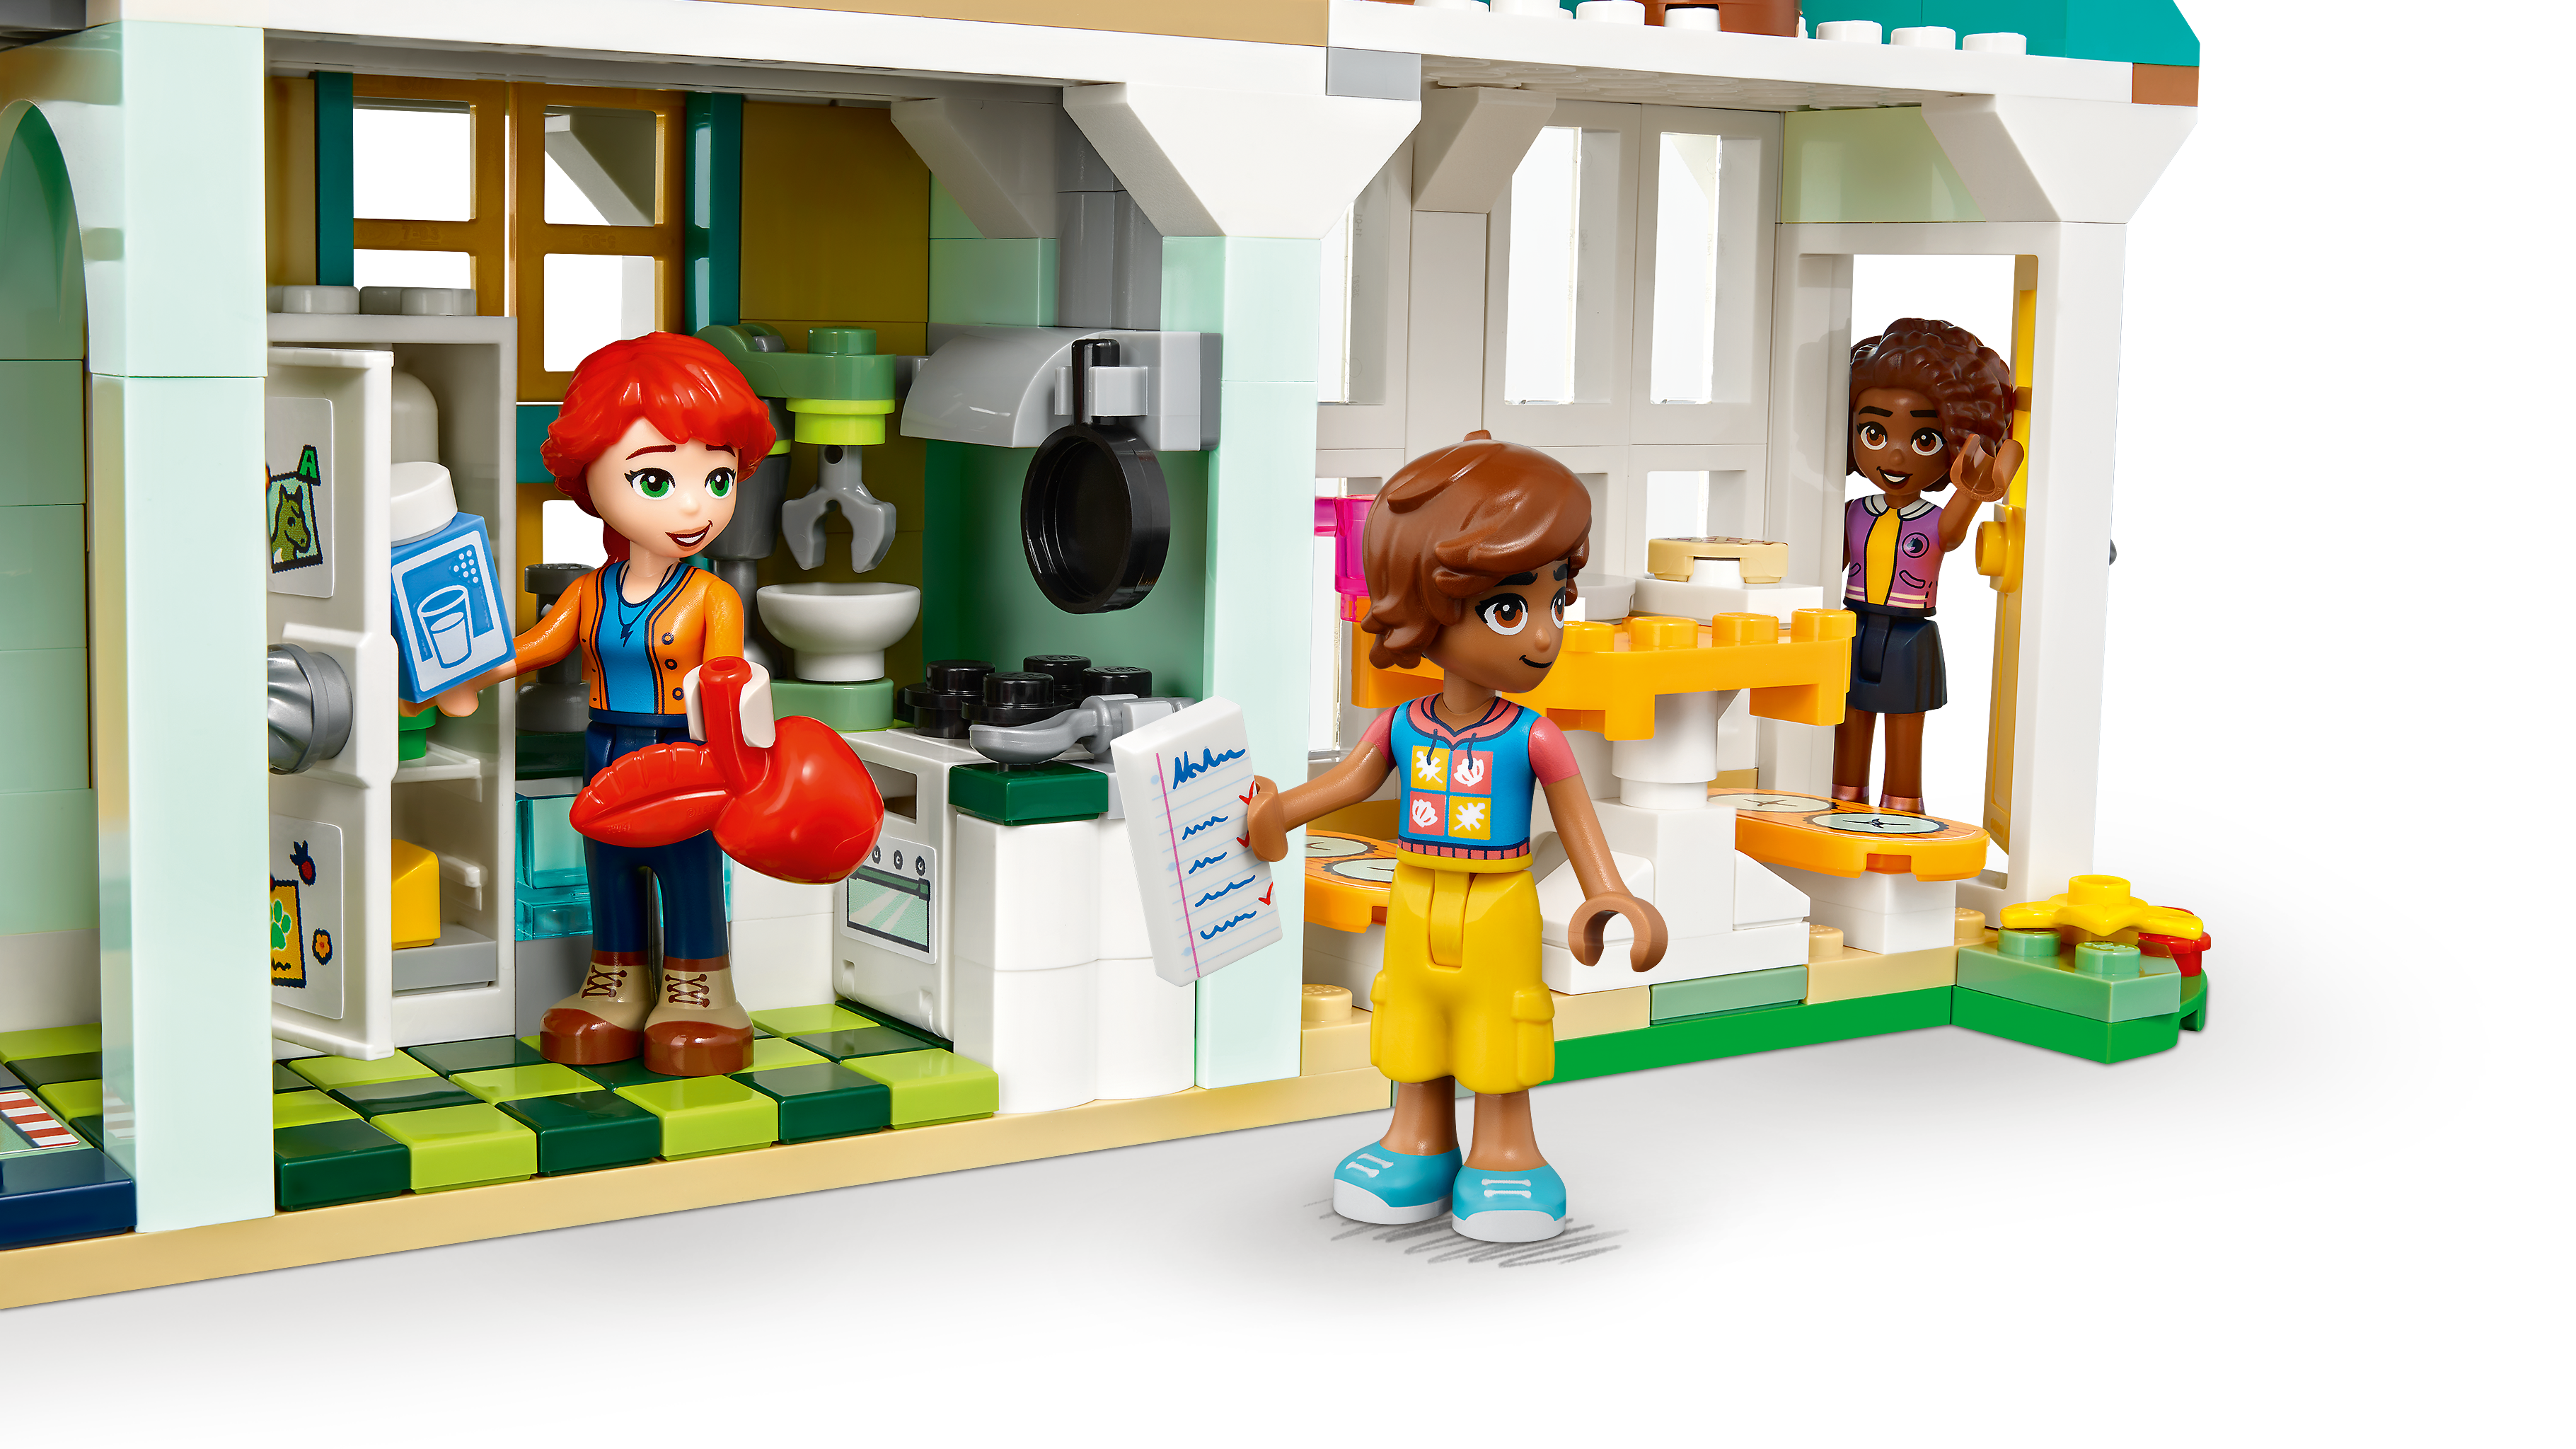 LEGO Friends La Casa di Autumn, Casa delle Bambole con Mini